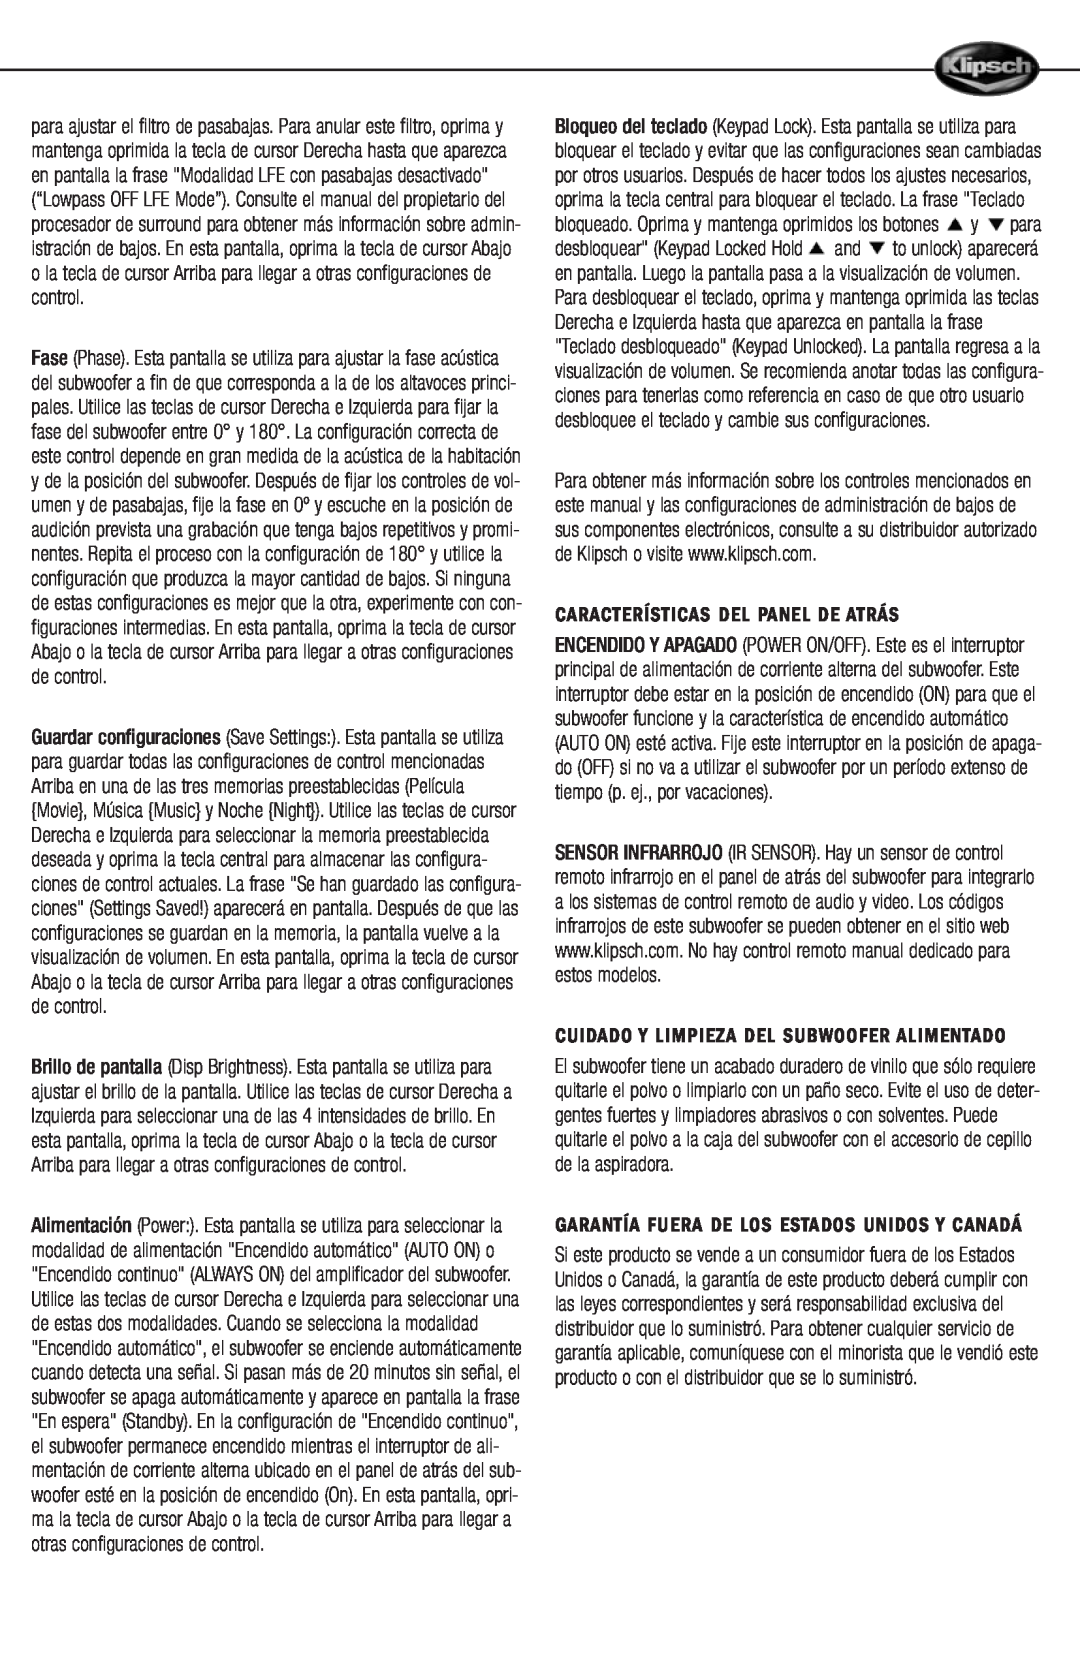 Klipsch 12d manual Características Del Panel De Atrás, Cuidado Y Limpieza Del Subwoofer Alimentado 